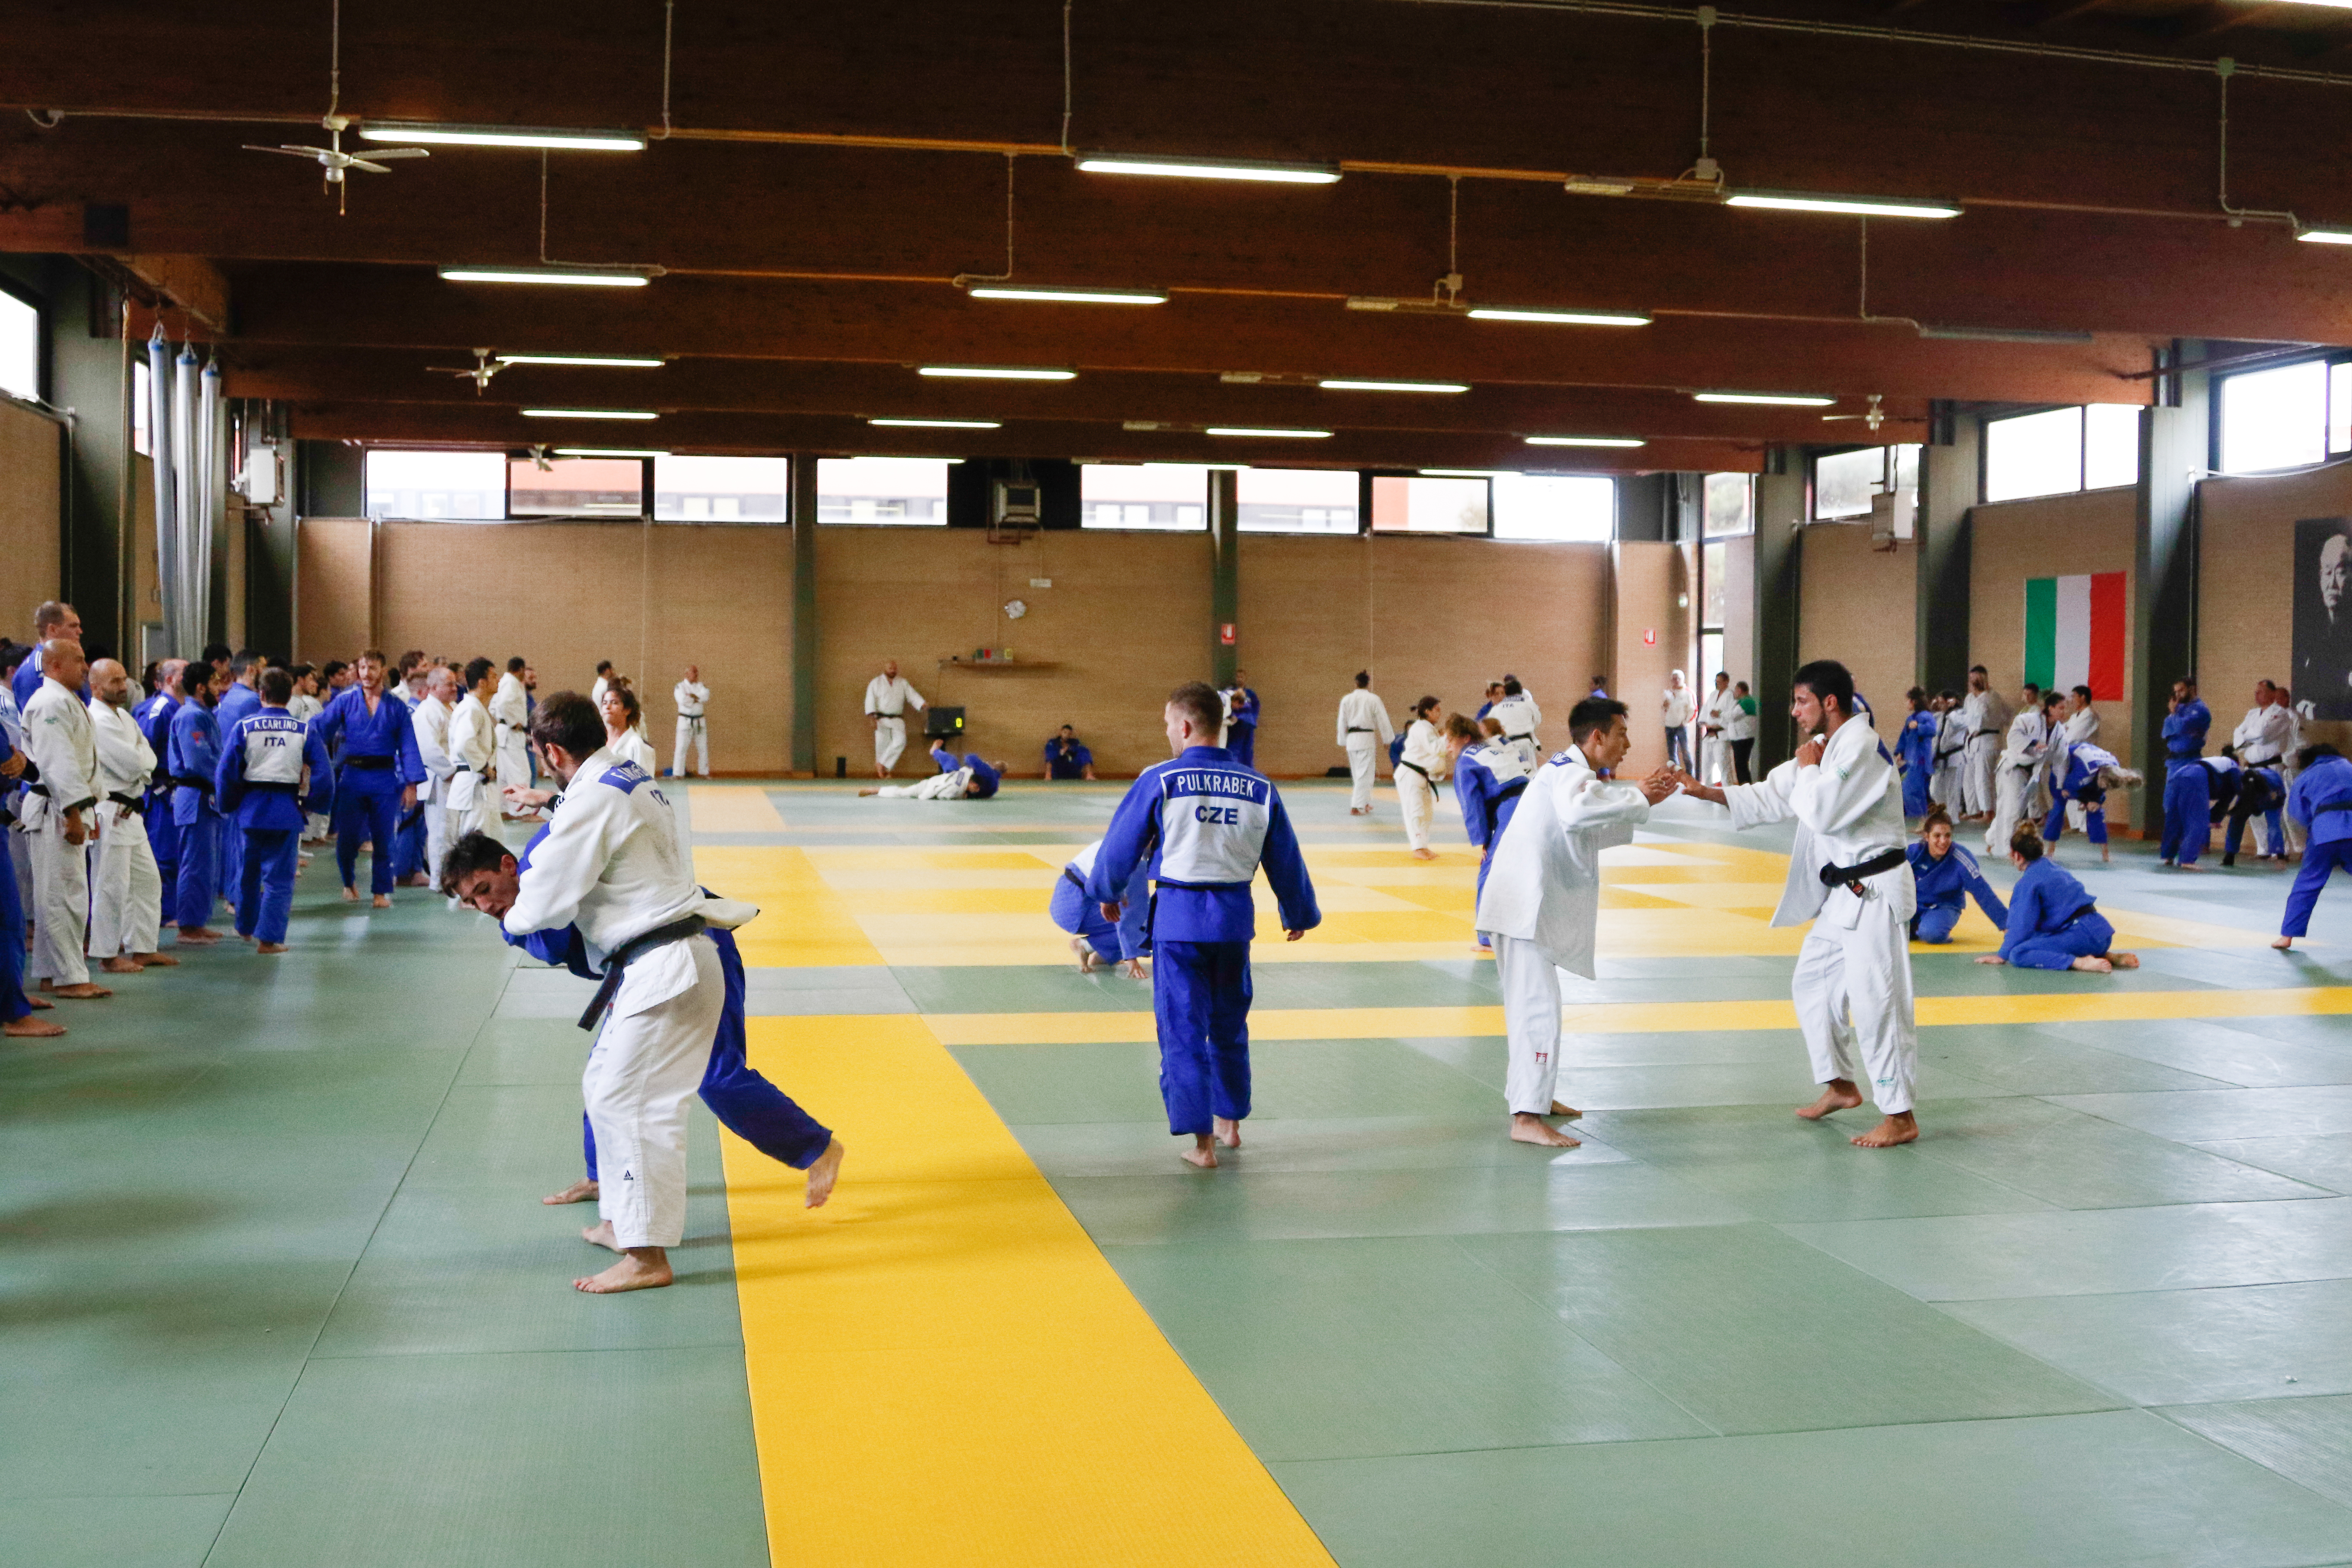 Iniziato a Ostia l’Olympic Training Centre, sul tatami atleti di 22 nazioni